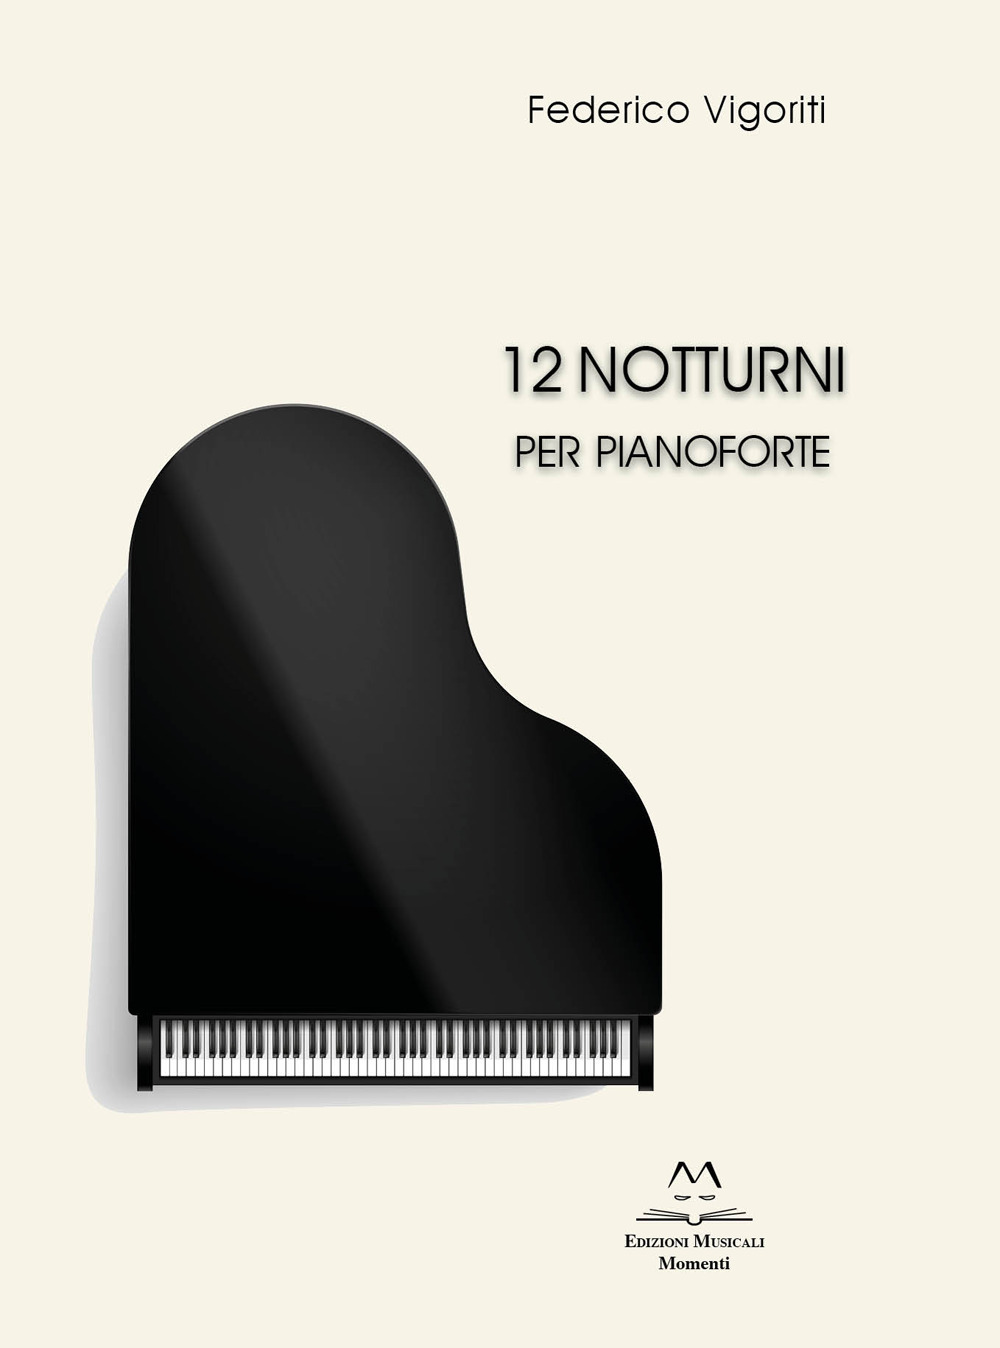 Libri Vigoriti Federico - 12 Notturni Per Pianoforte NUOVO SIGILLATO SUBITO DISPONIBILE